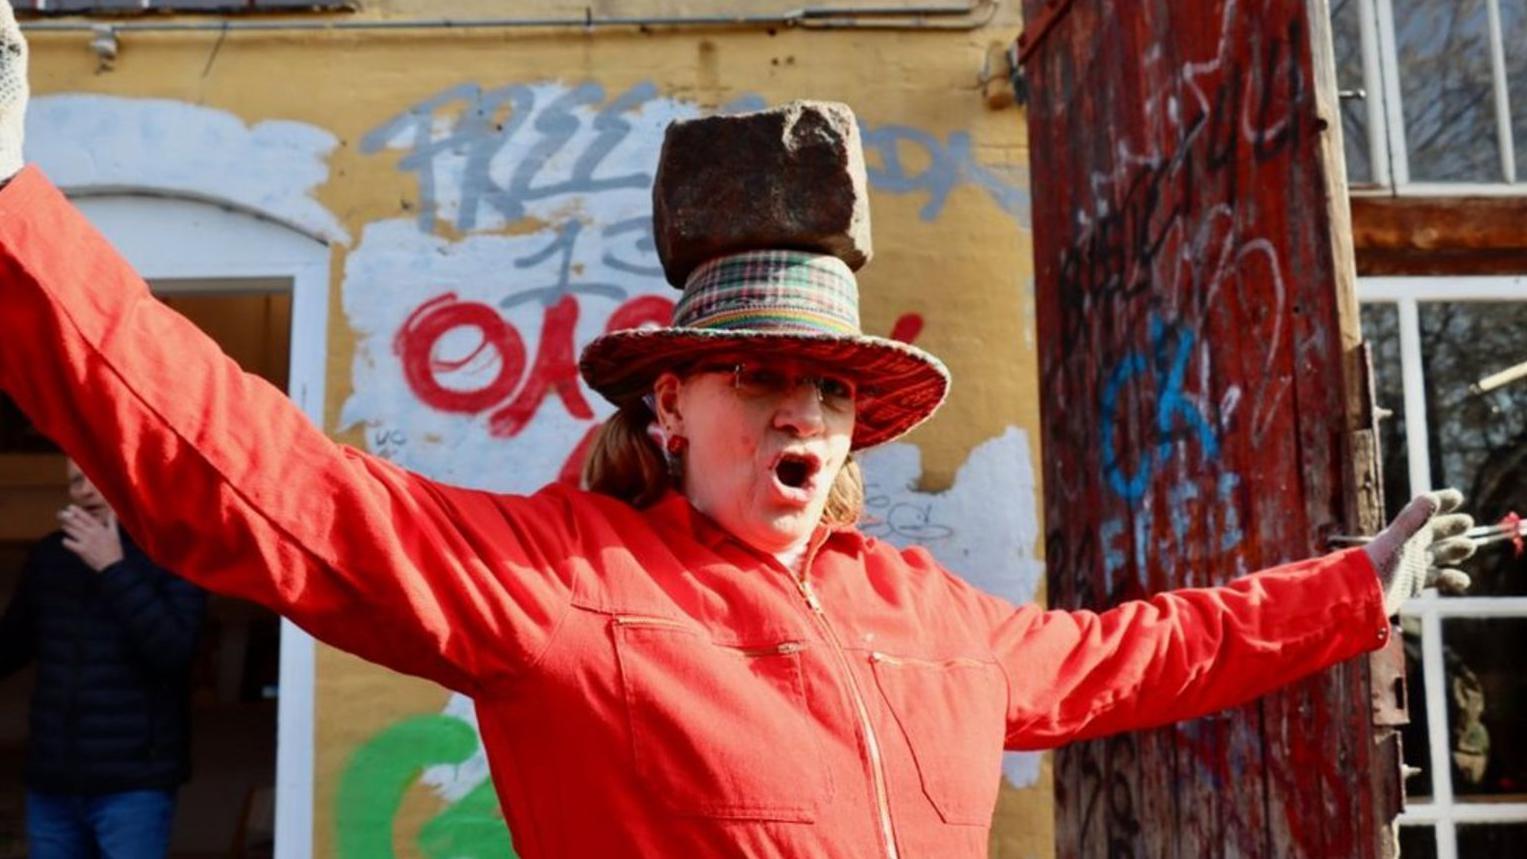 Una mujer con un adoquín de Pusher Street en su cabeza celebra el intento por recuperar el control de Christiania.

BBC